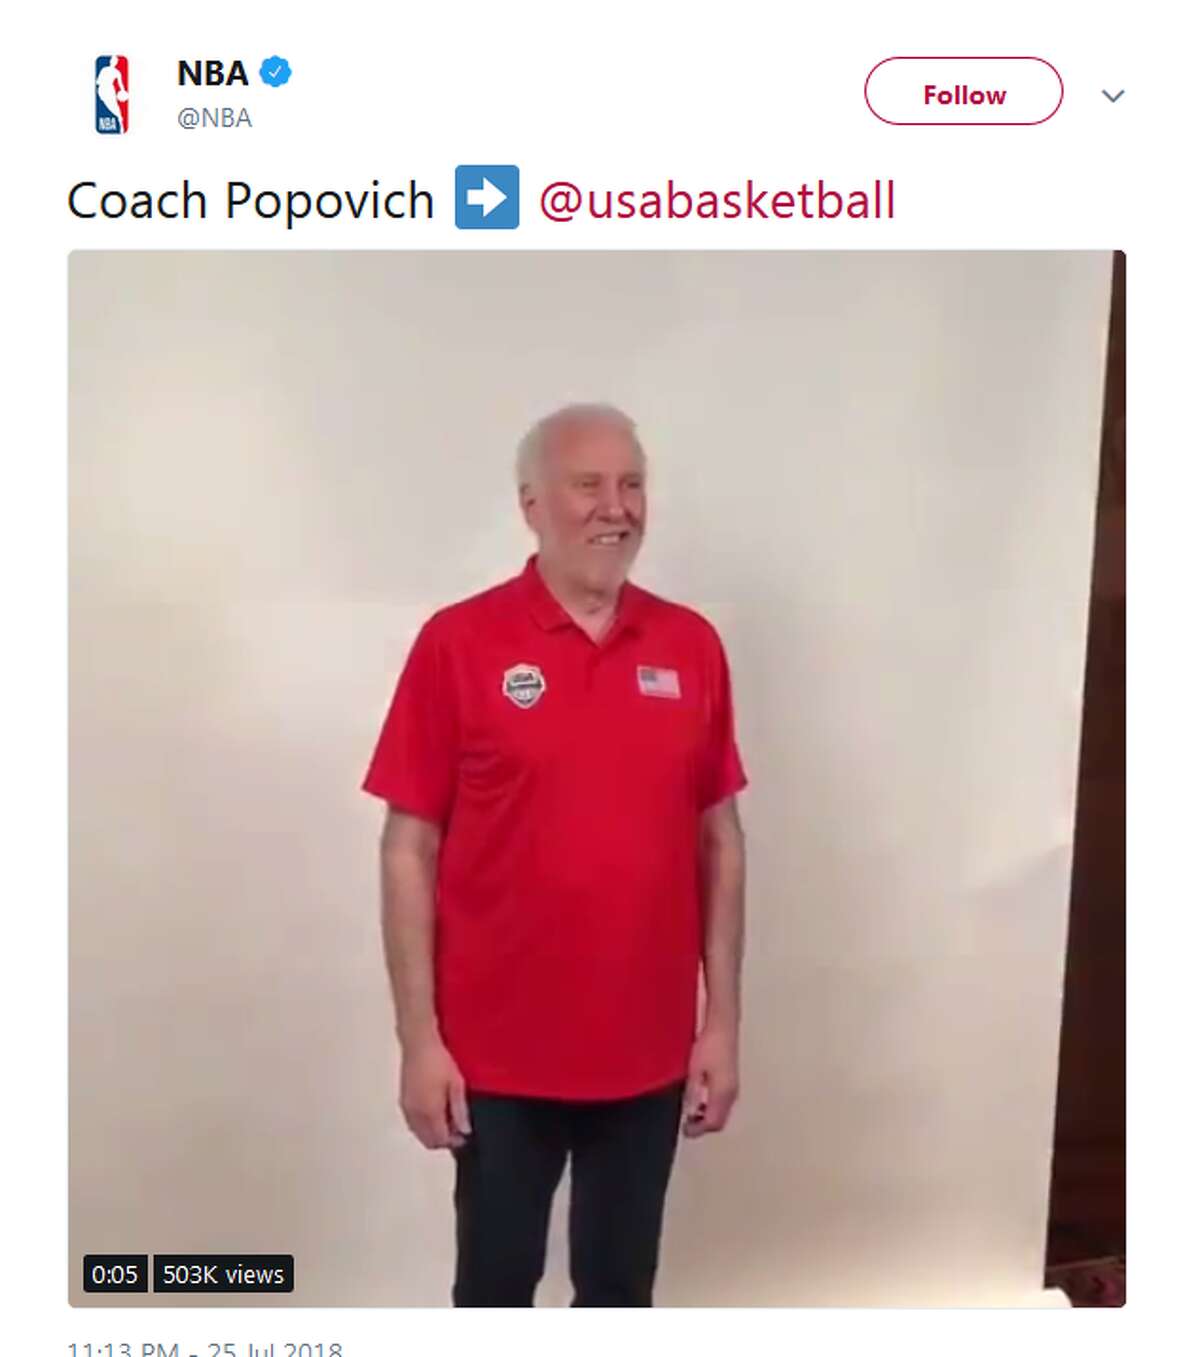 @NBA: Coach Popovich